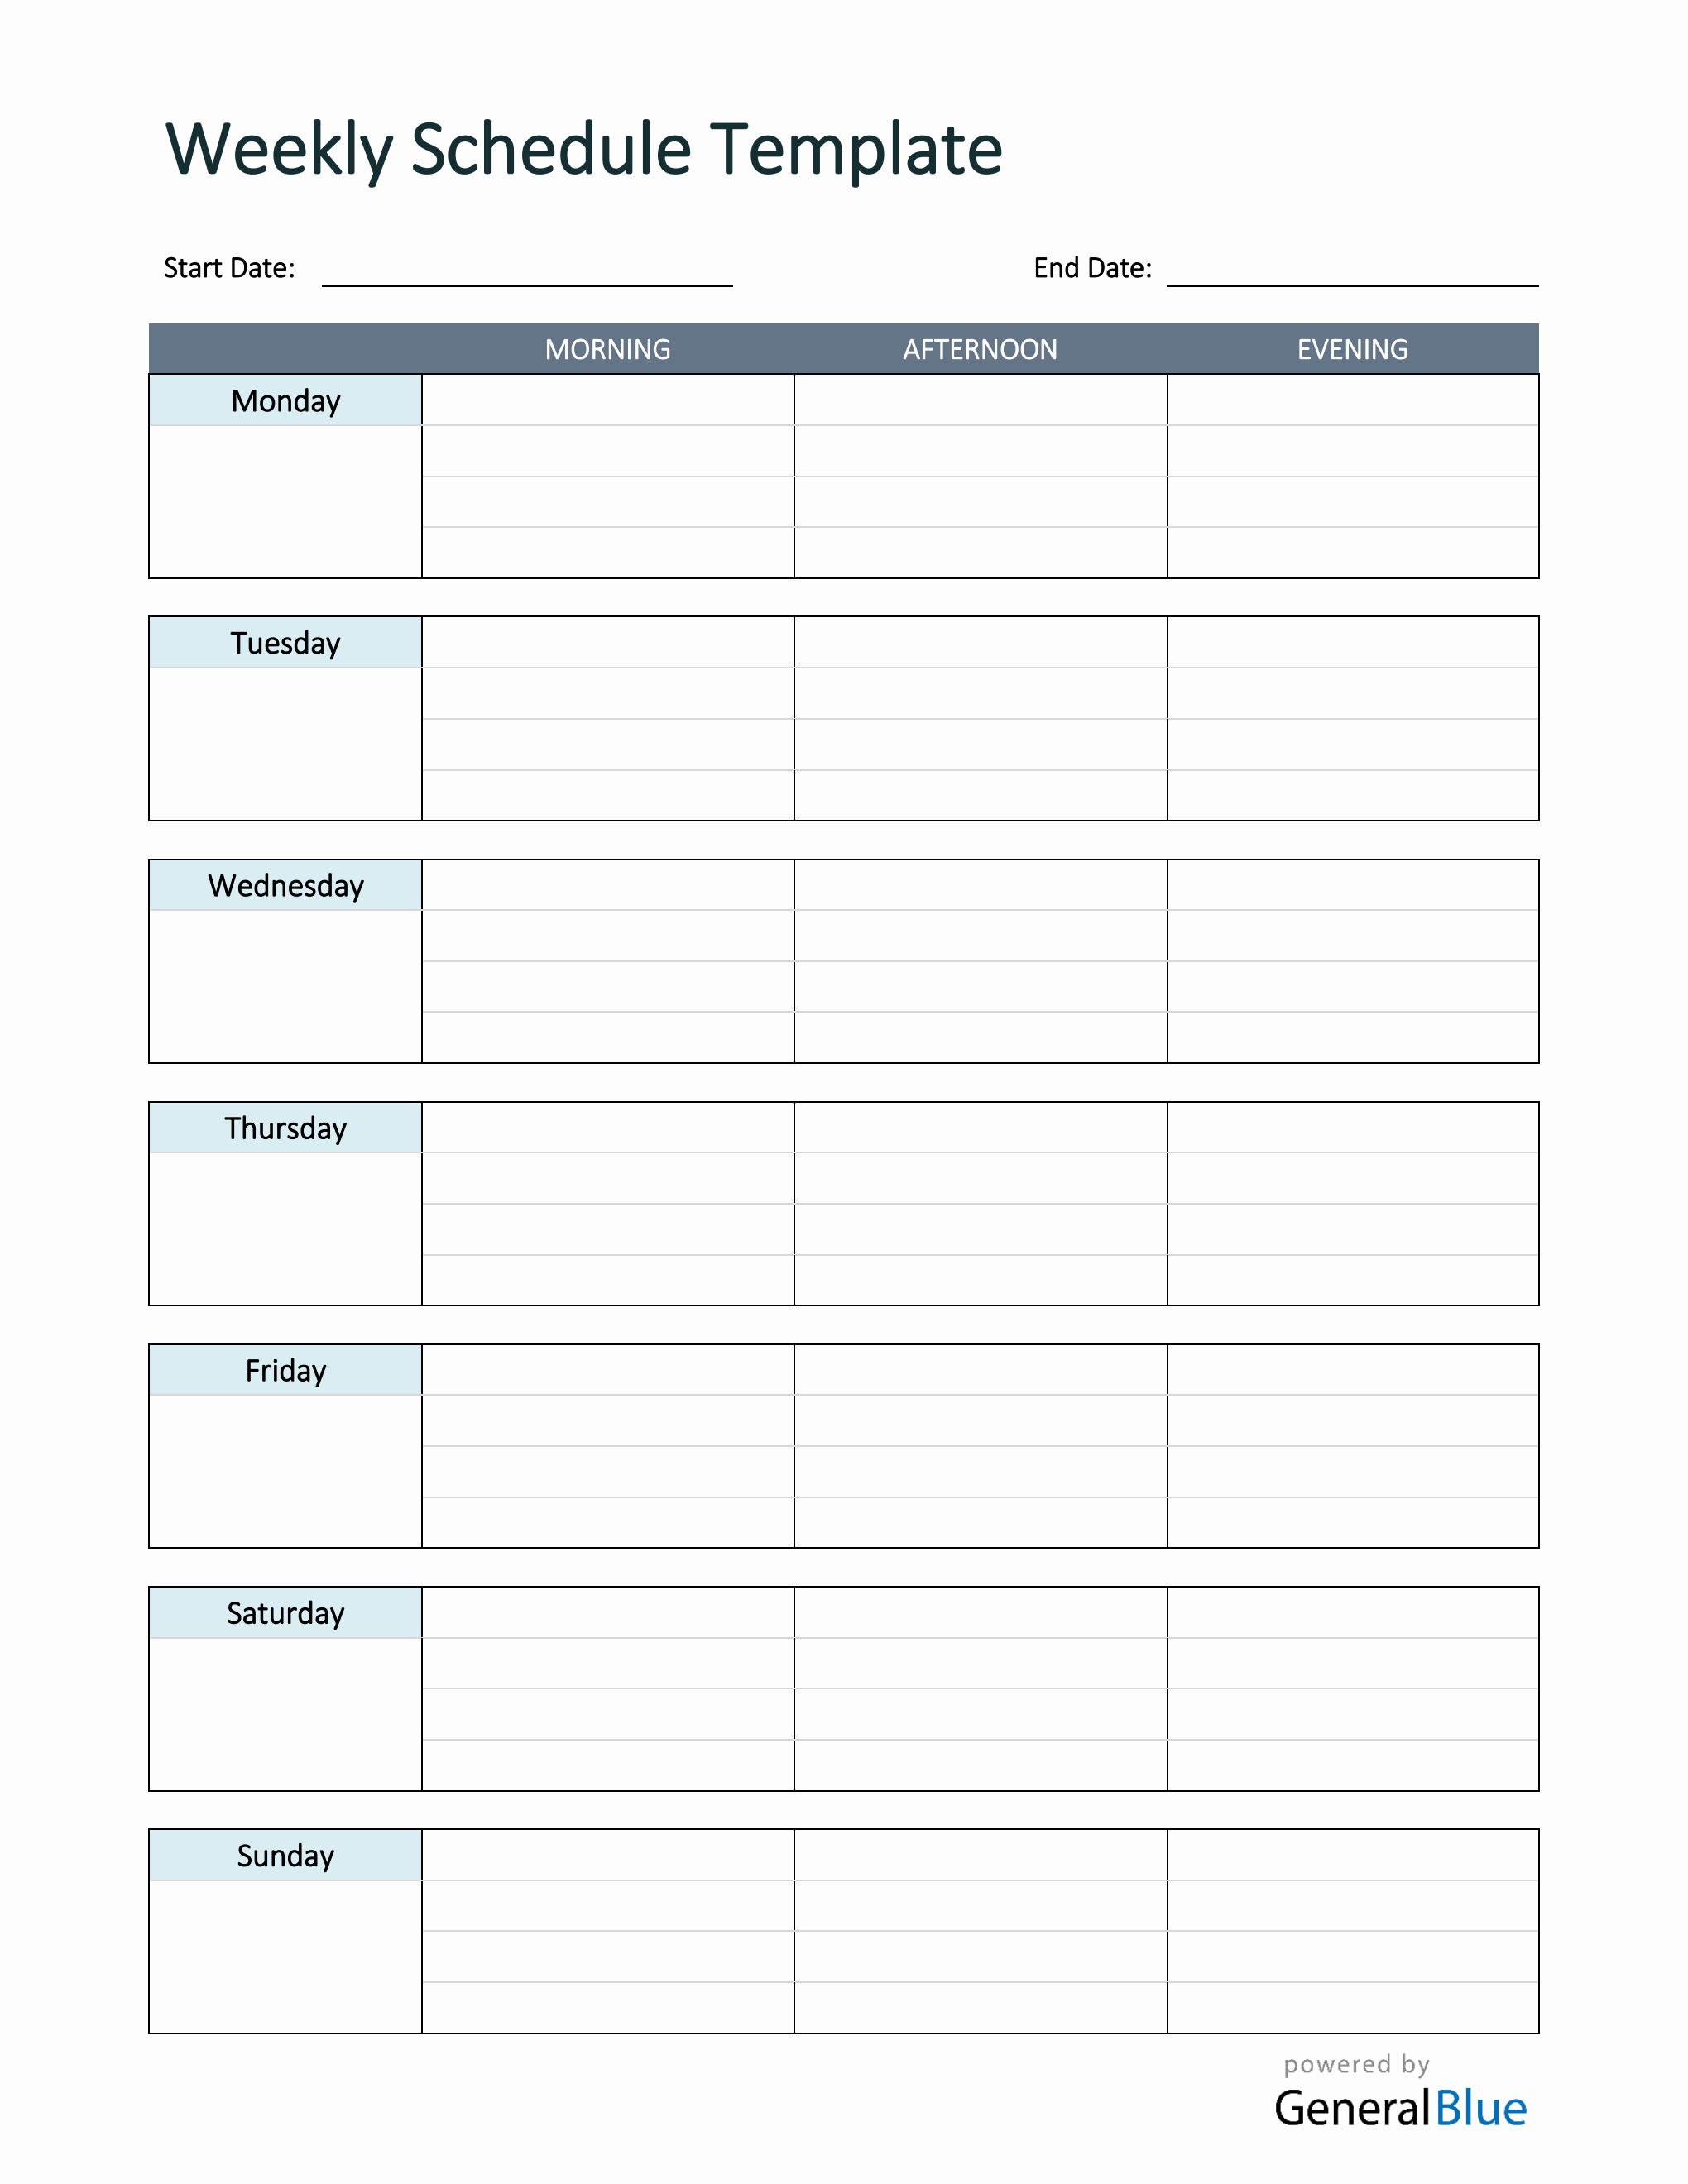 simple-weekly-schedule-template-in-word